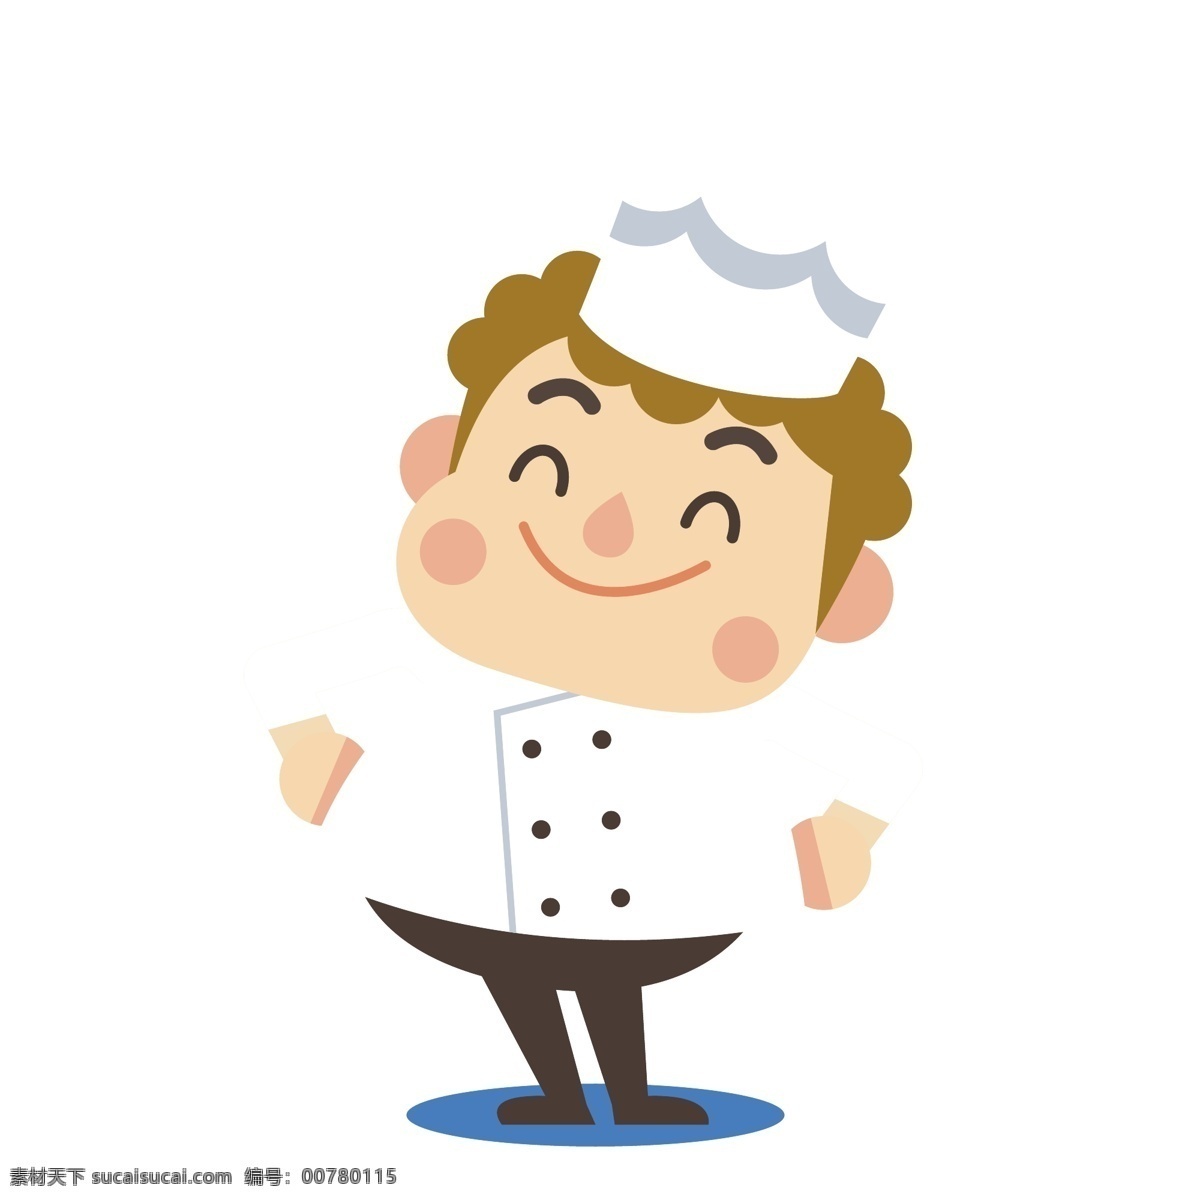 开心 叉腰 姿势 厨师 矢量 叉腰姿势 白色 白色制服 胖胖的 胖胖的厨师 可爱 可爱的厨师 卡通 卡通的厨师 餐饮服务员